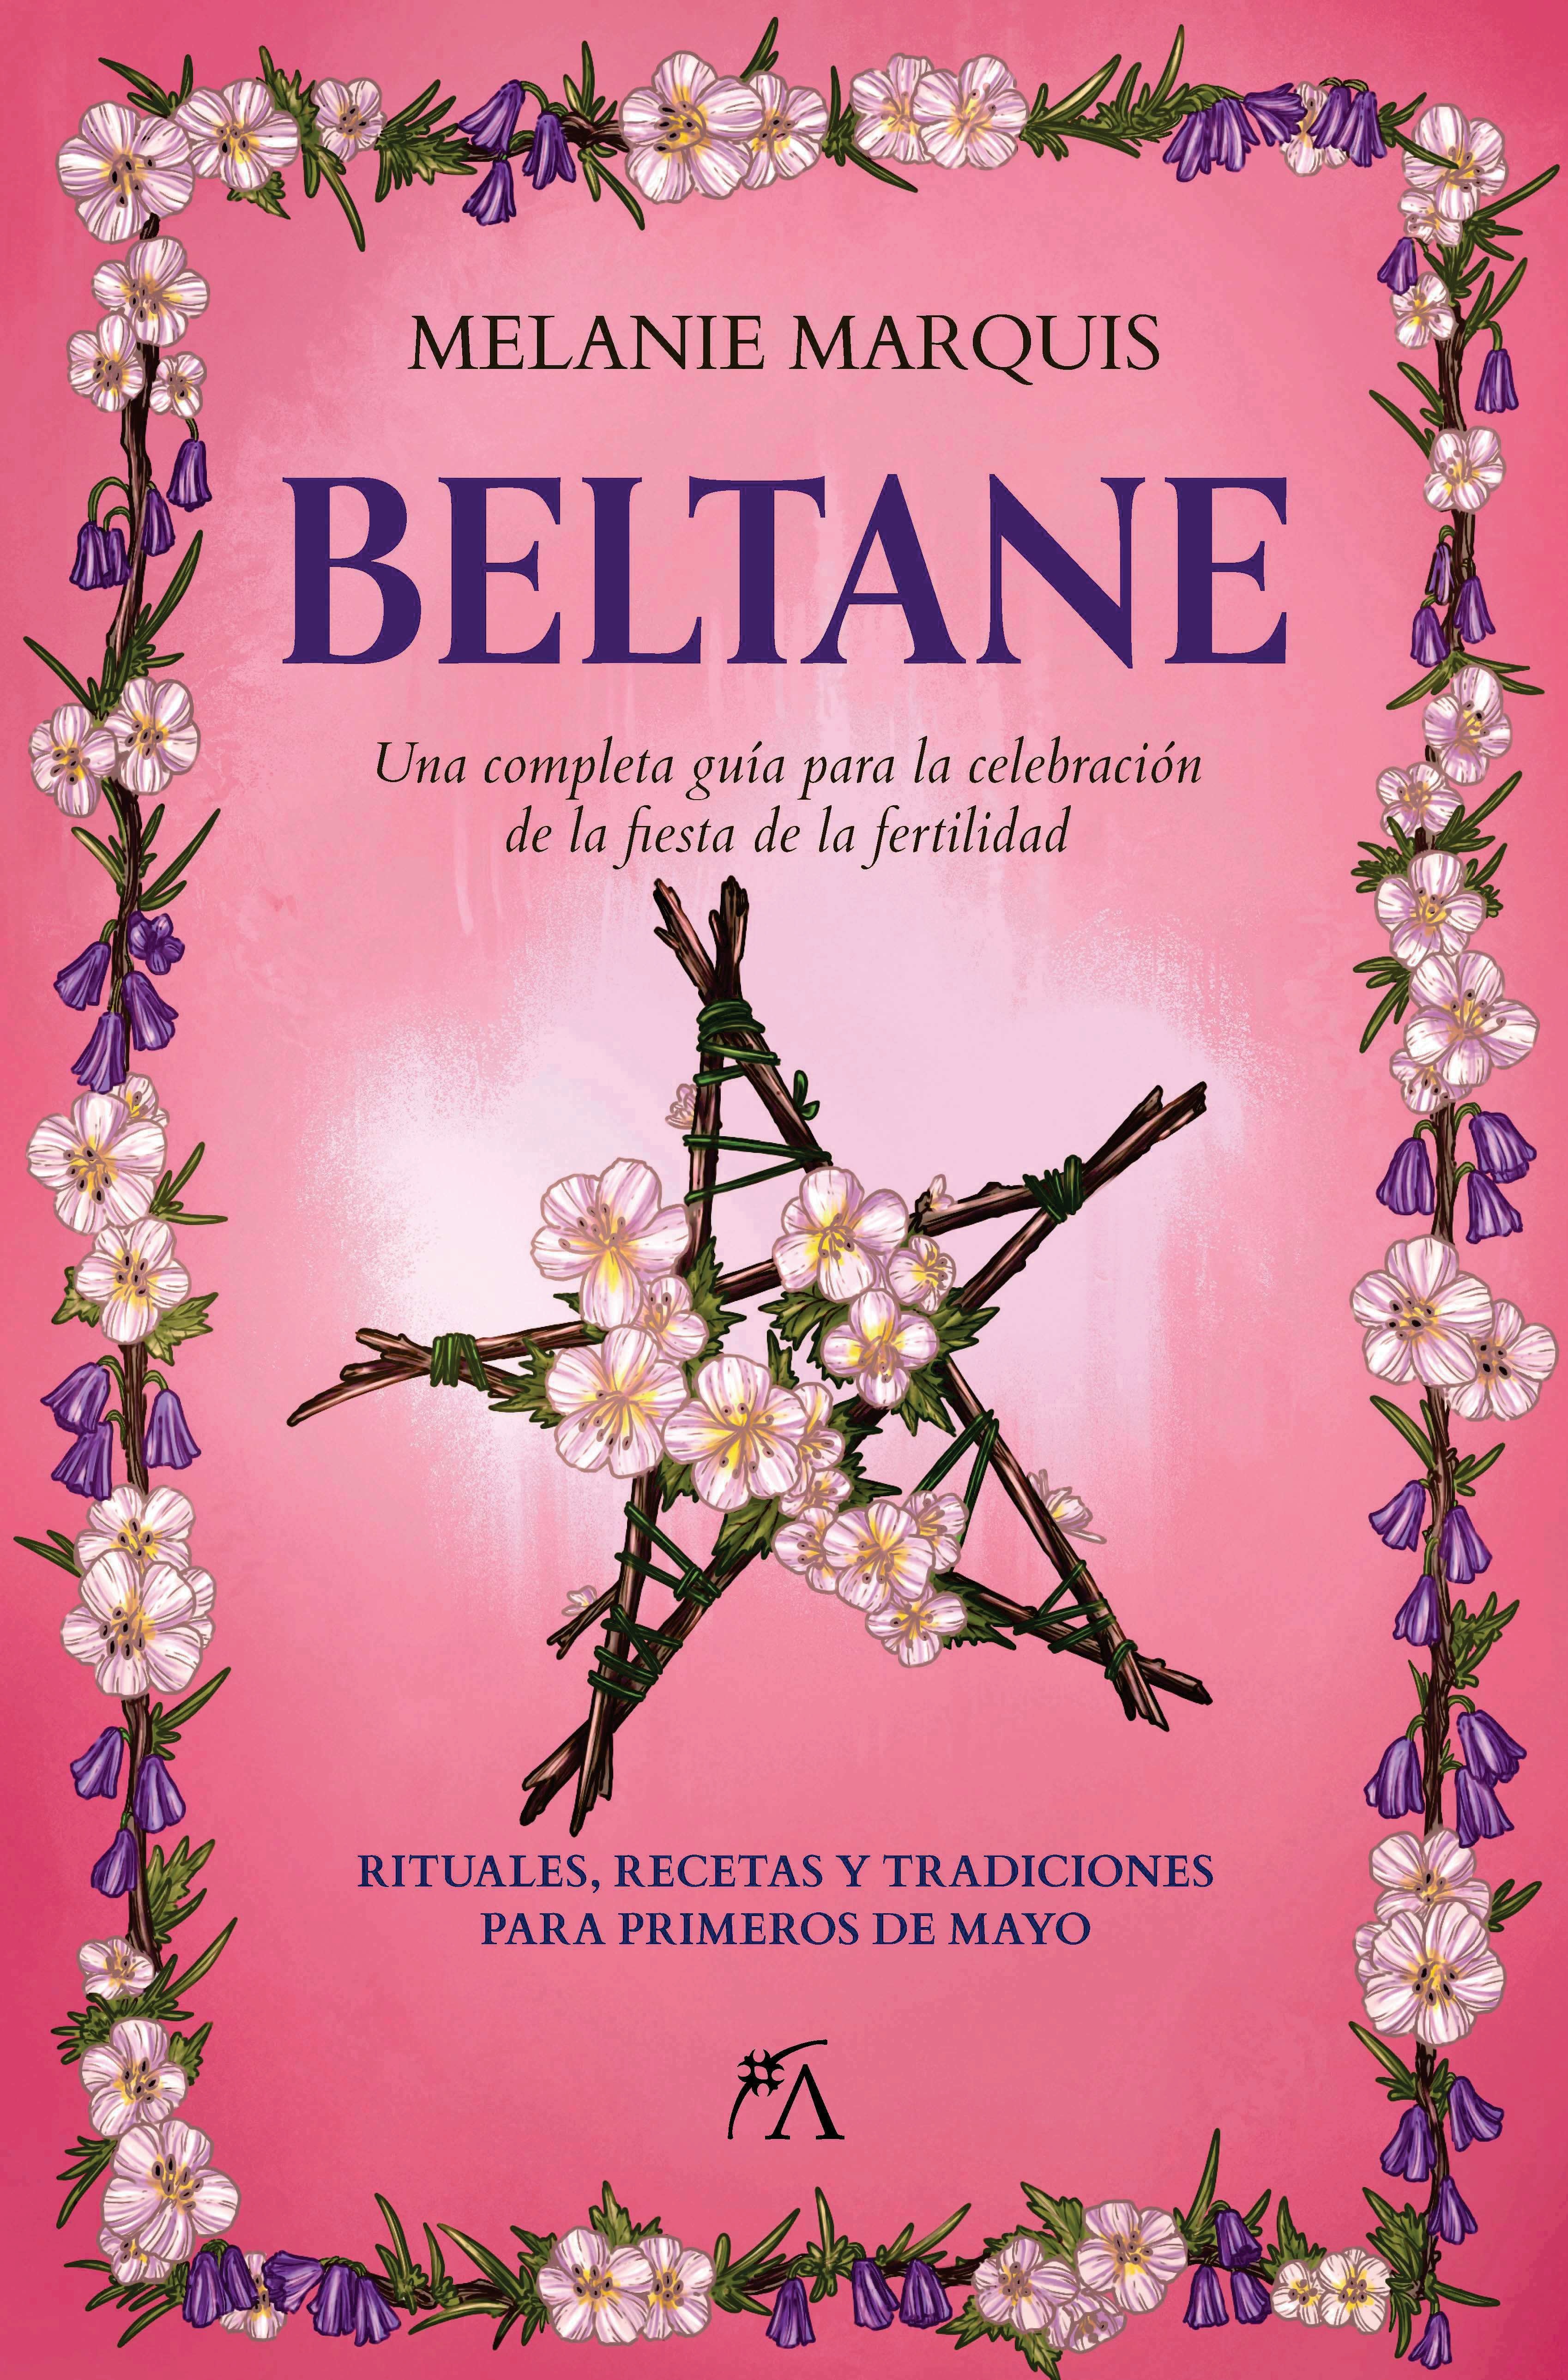 Beltane "Una completa guía para la celebración de la fiesta de la fertilidad". 